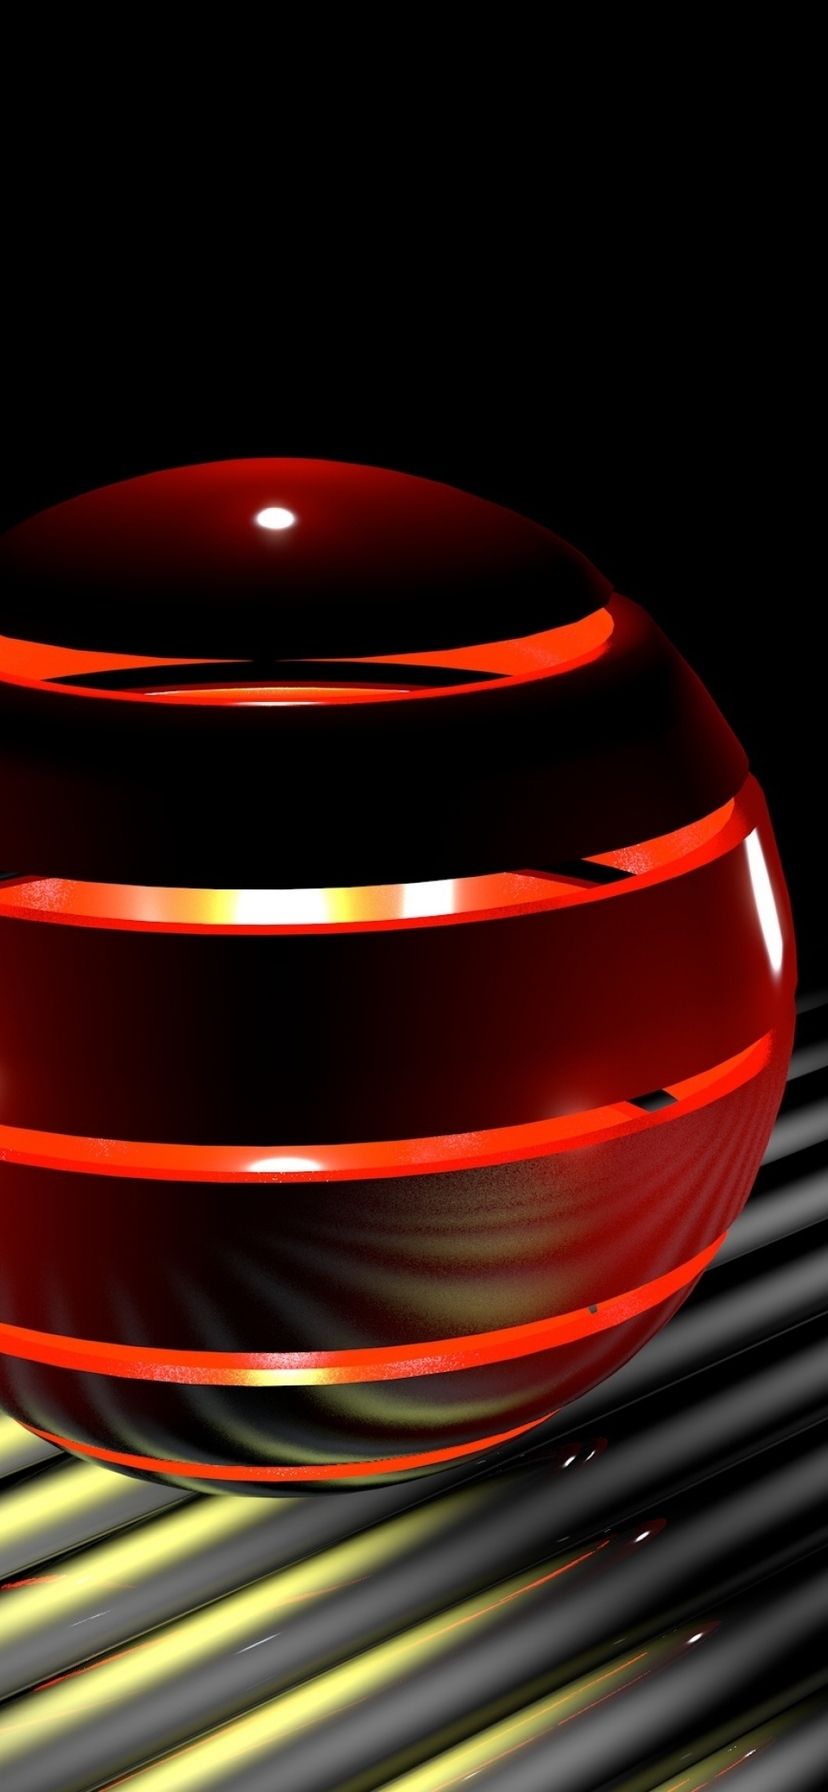 Картинка: Шар, сфера, полосы, красный, свет, огонёк, ball, light, line